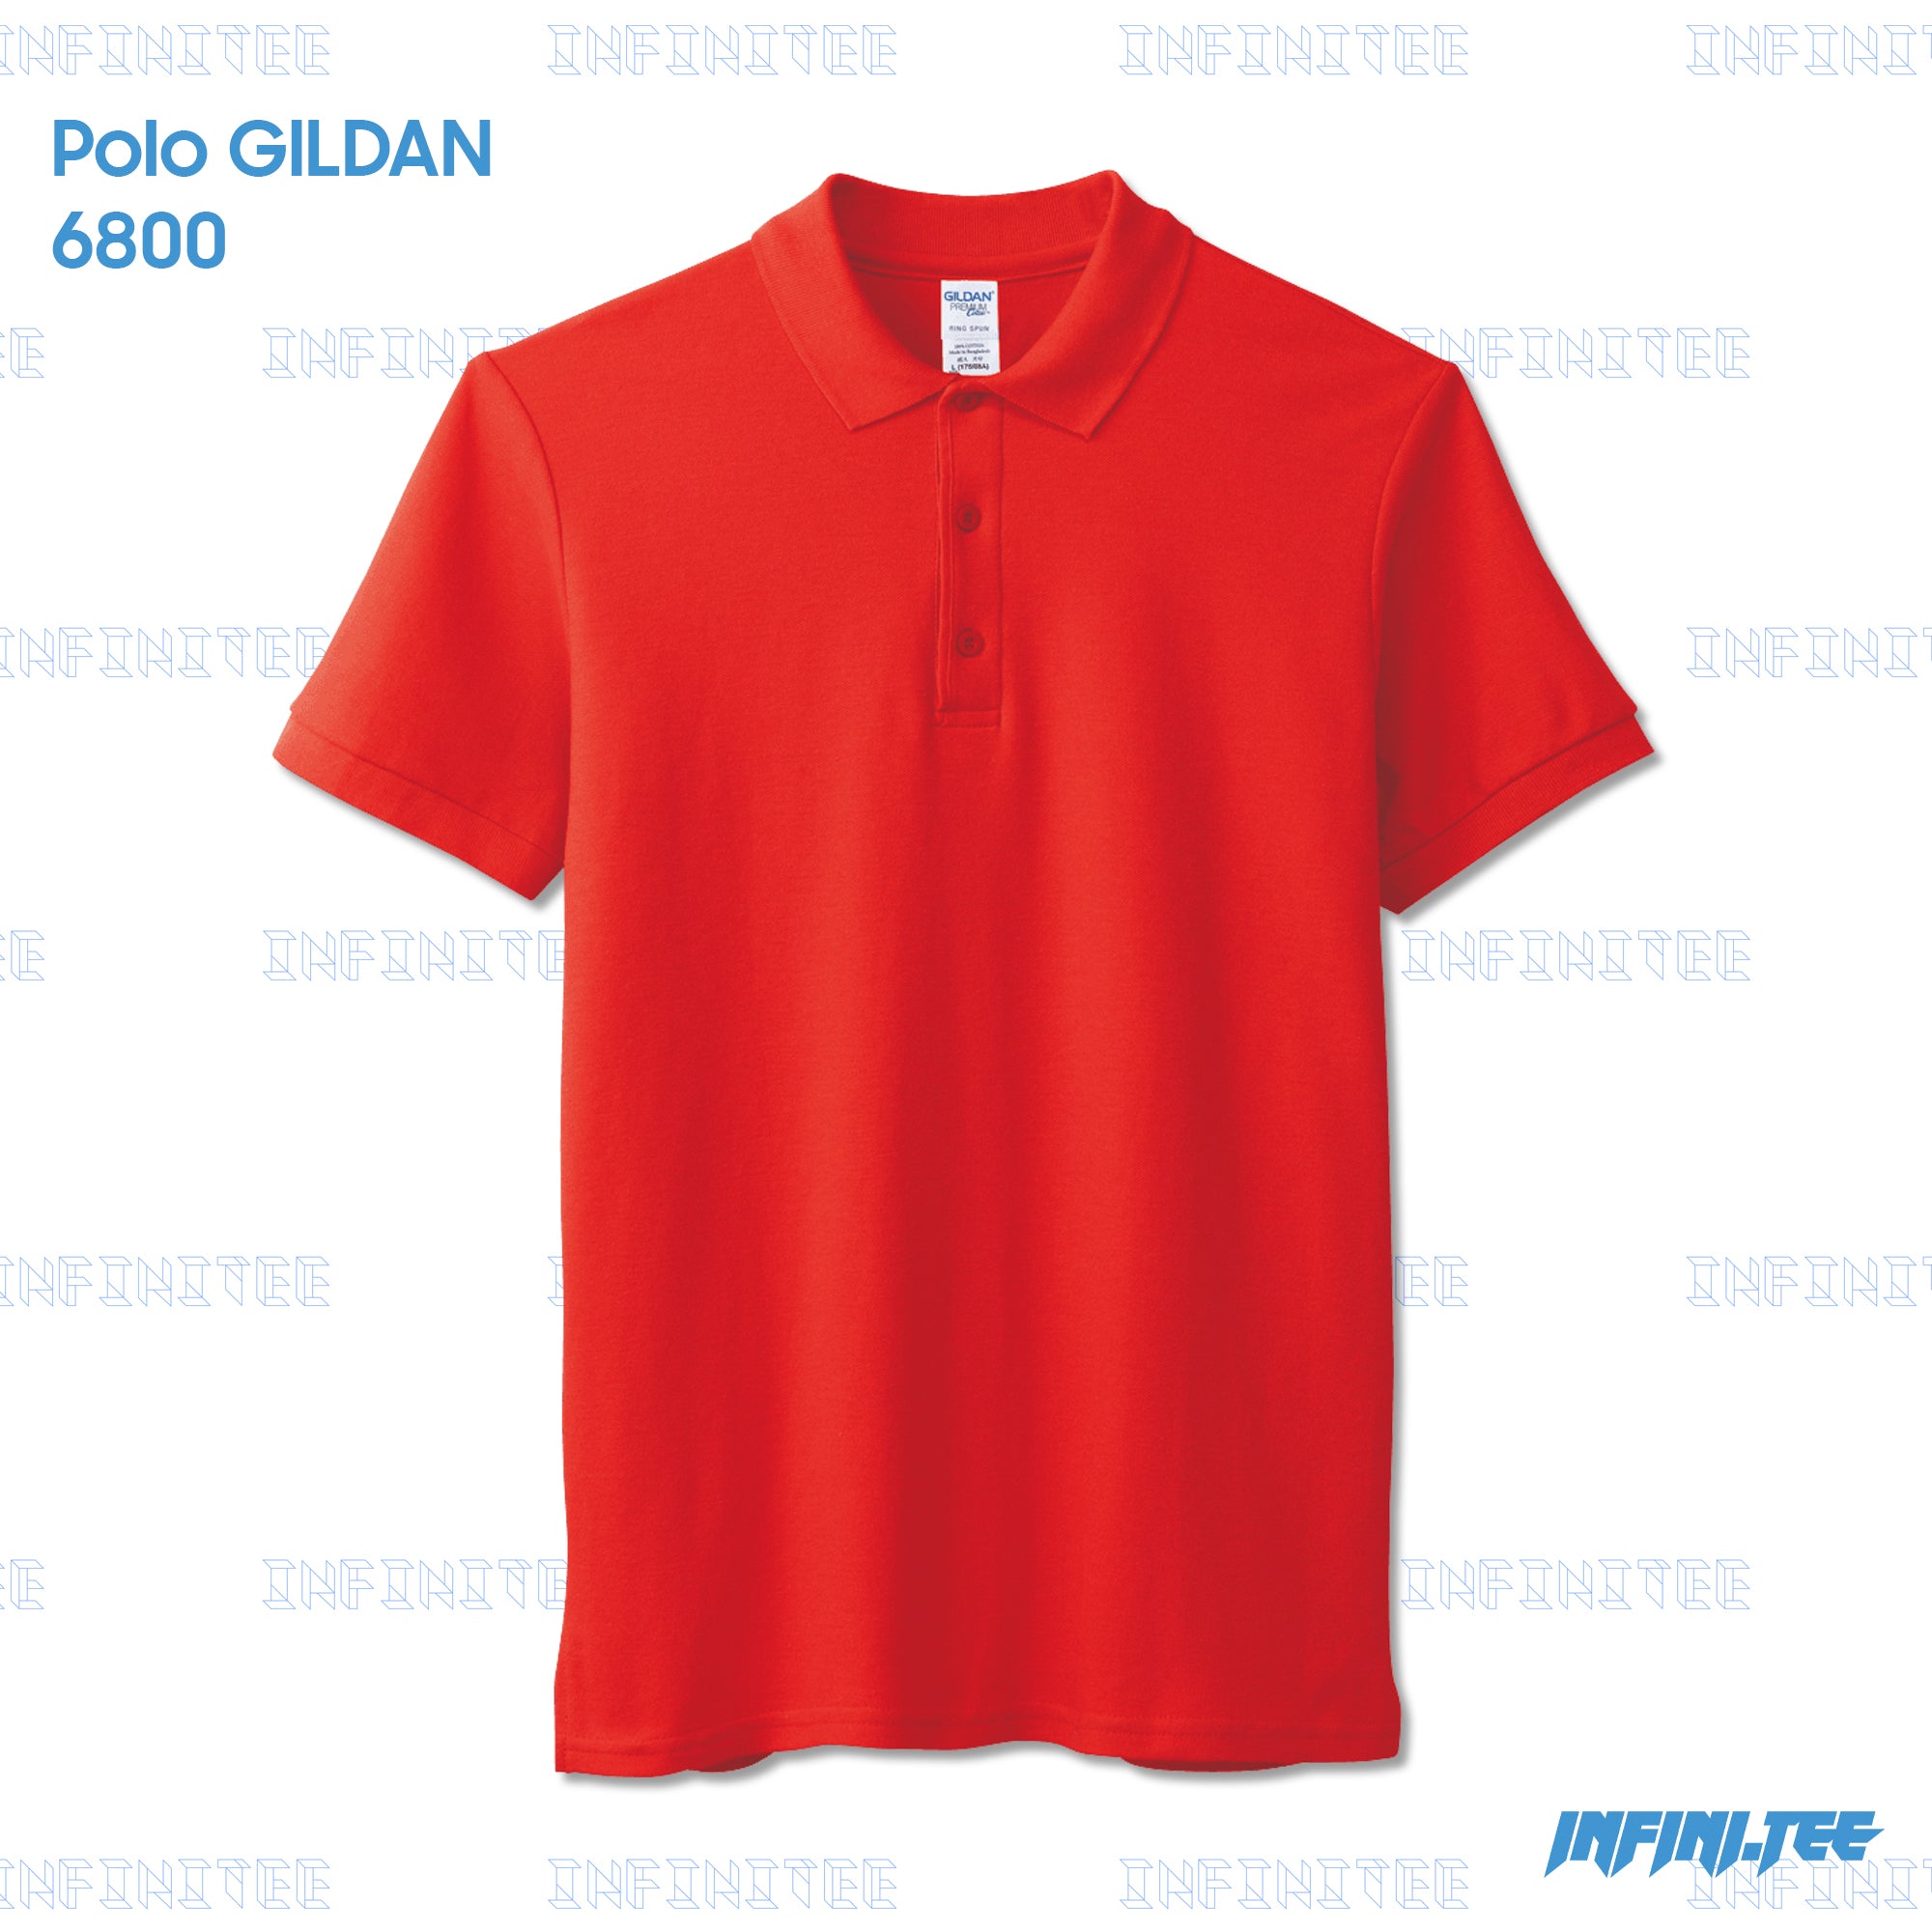 POLO 6800 GILDAN - RED